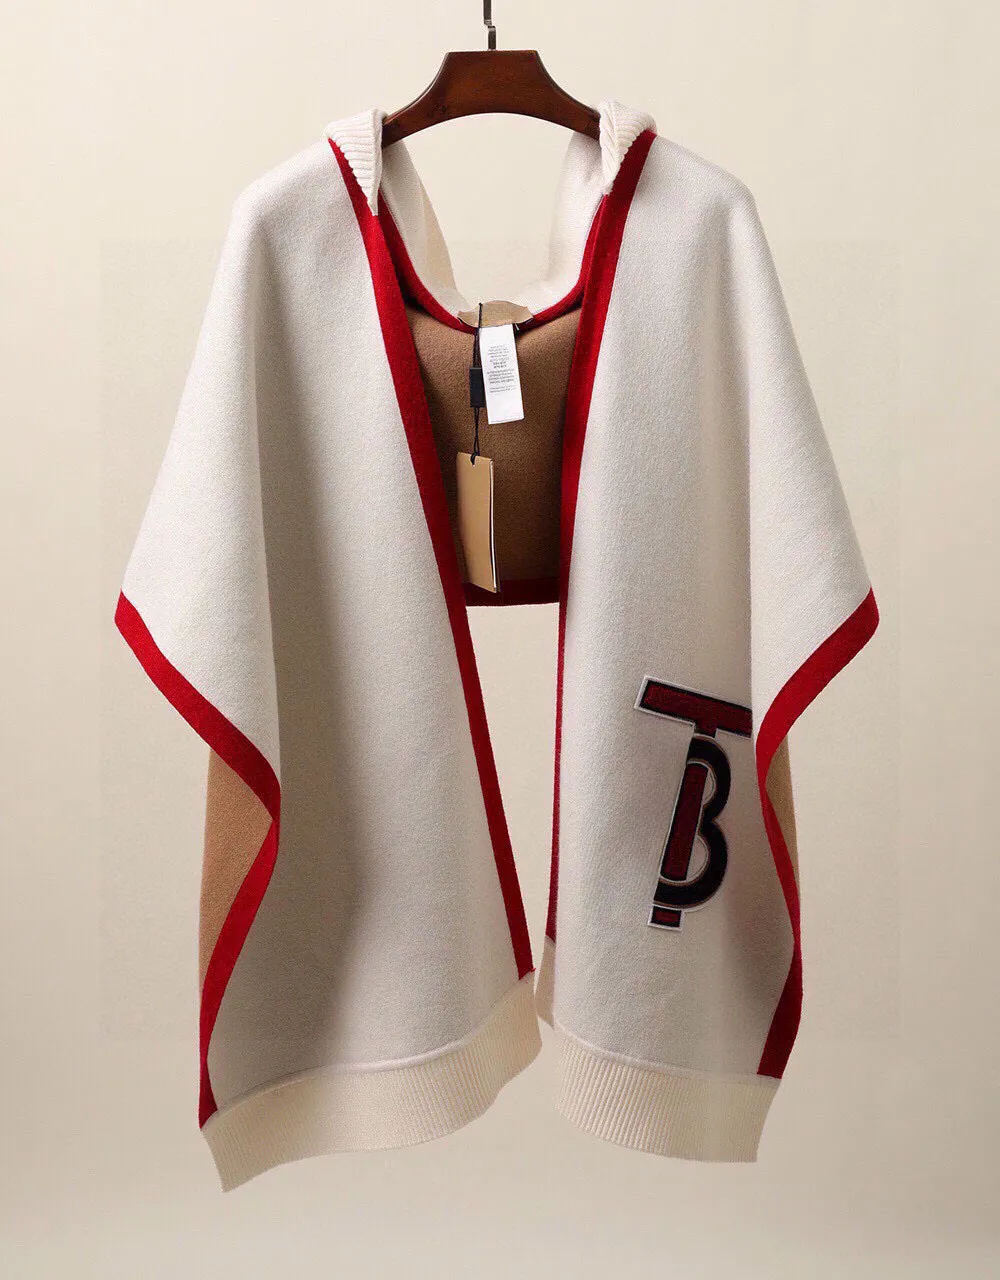 Le nouveau tissu tricoté en laine et cachemire ultrafin à capuche jacquard à motif logo qui, comme écharpe ou cape, confort et chaleur